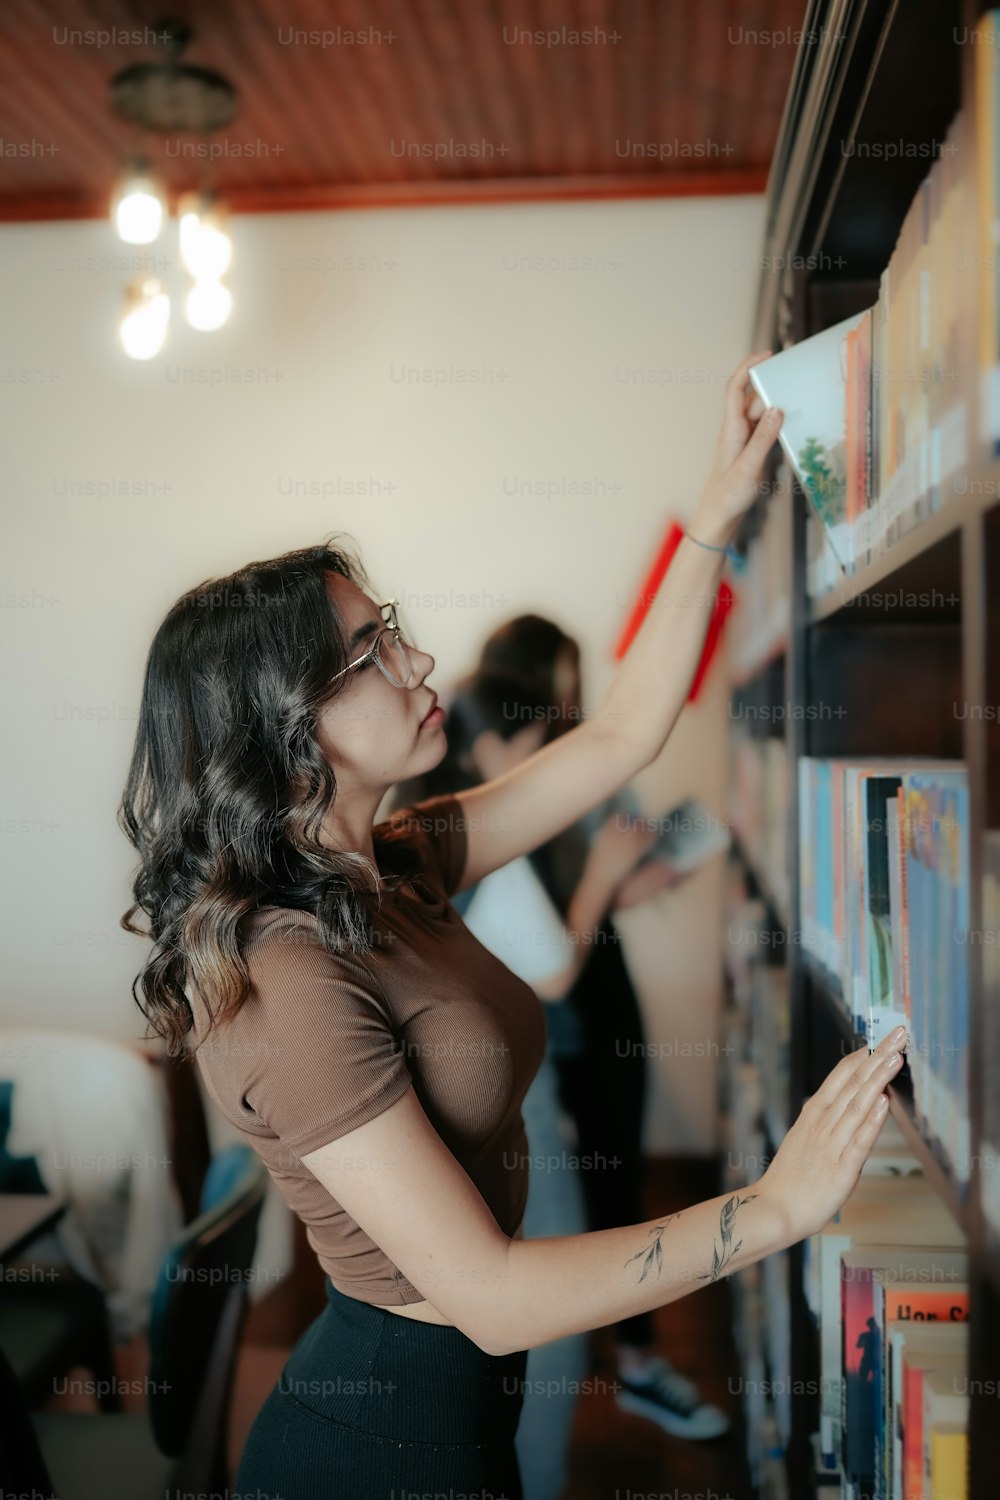 Une femme regardant un livre sur une étagère